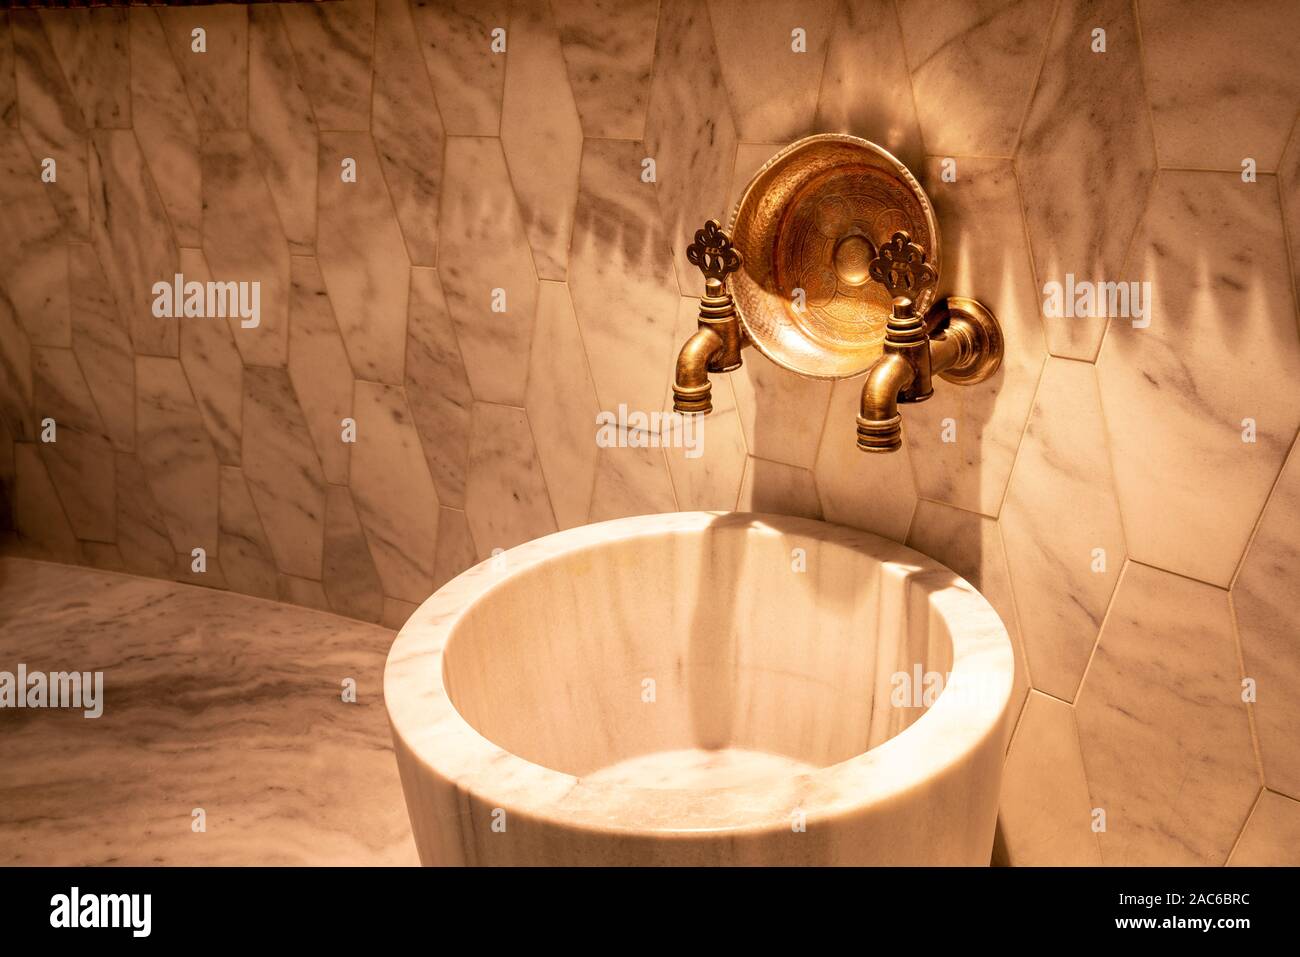 Son architecture unique une baignoire robinet qui répond pleinement aux normes d'hygiène Banque D'Images